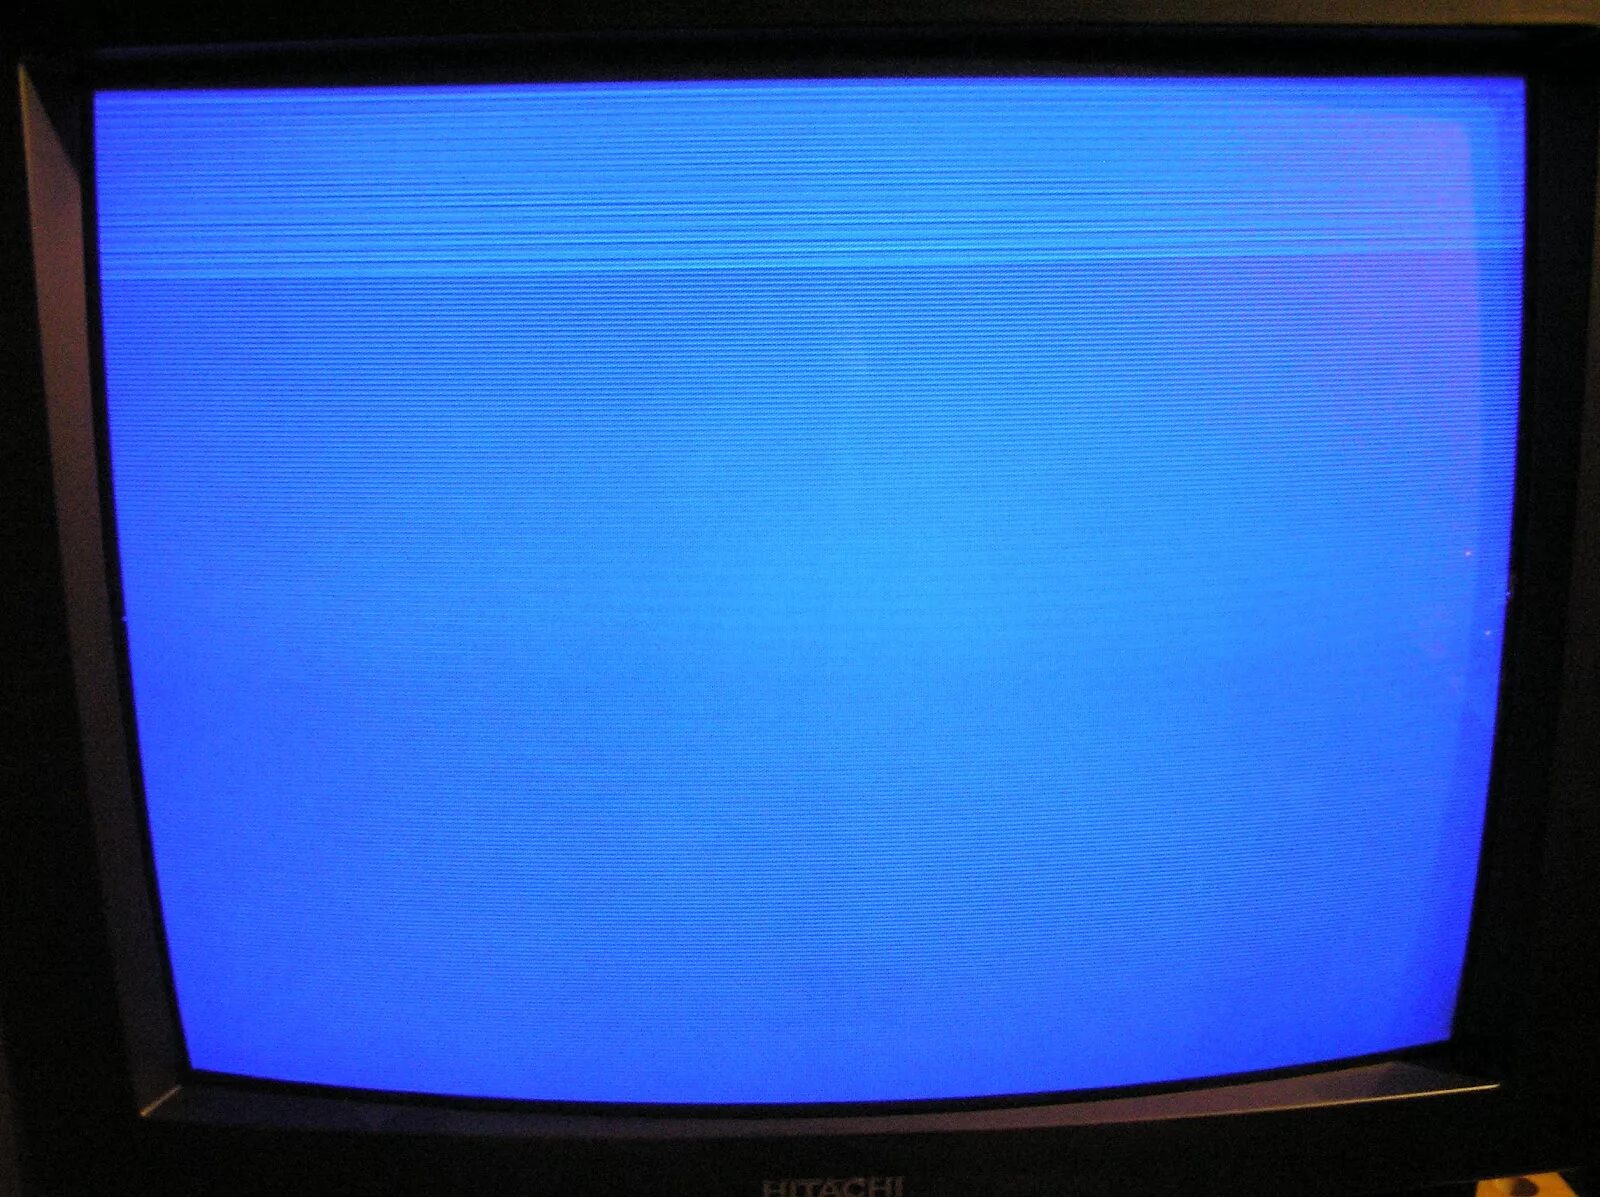 Кинескоп 21 дюйм. ЭЛТ Thomson 29. Экран телевизора. Голубой экран телевизора.